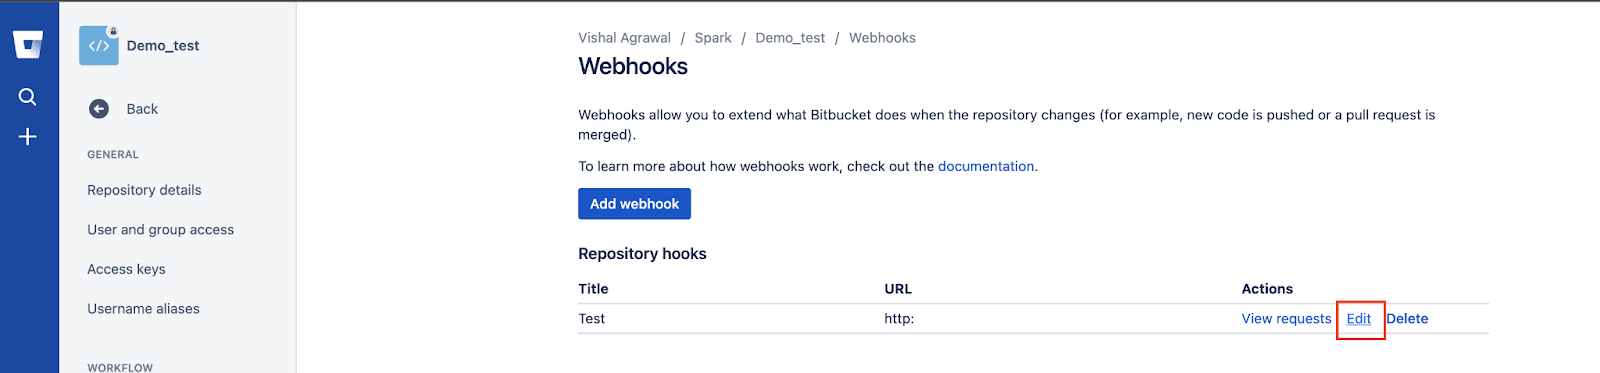 Bitbucket Webhook: Step 4.1 